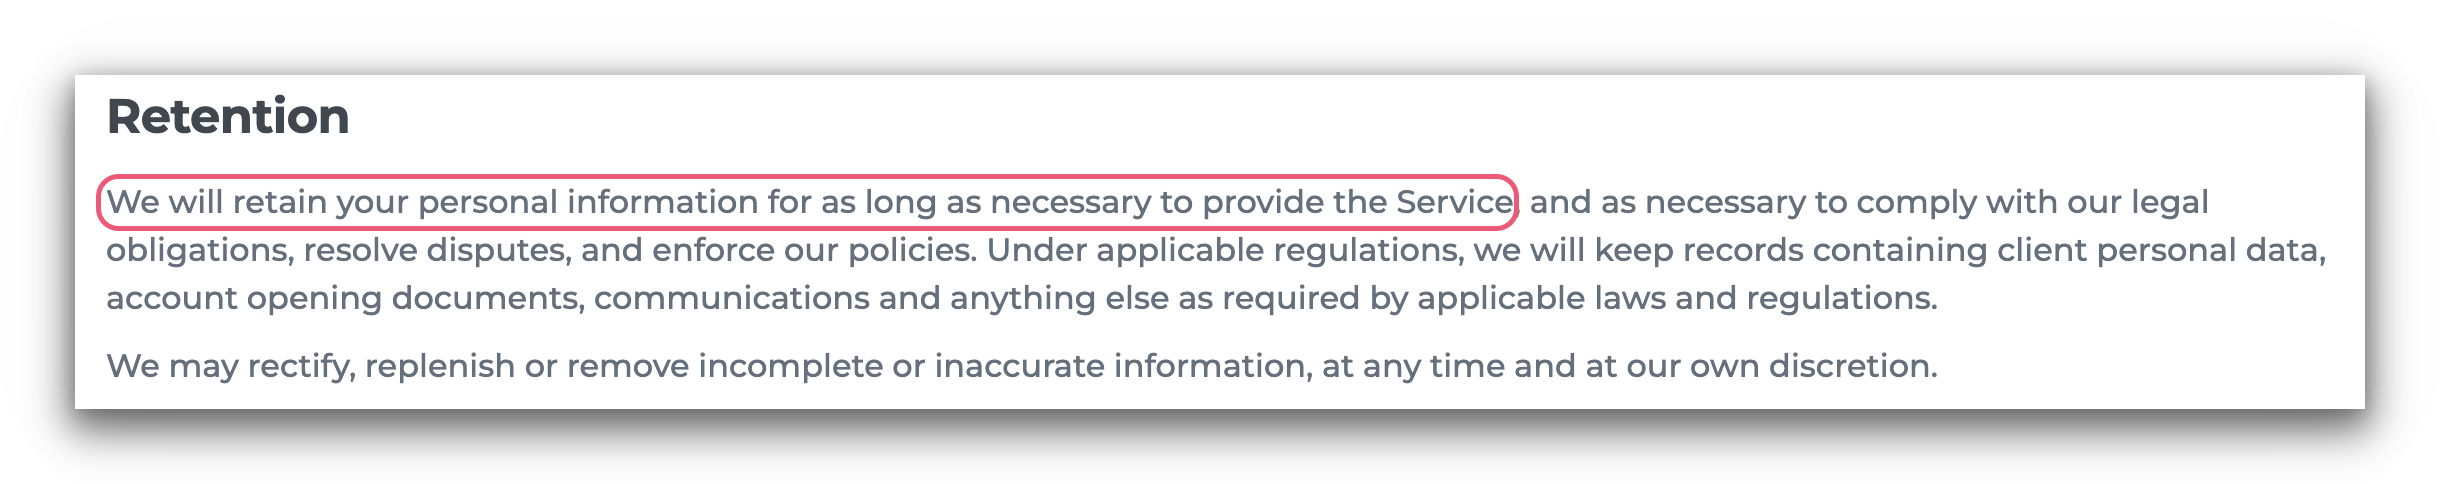 Capture d'écran de la politique de confidentialité de Hola VPN qui indique qu'il conserve vos données stockées.